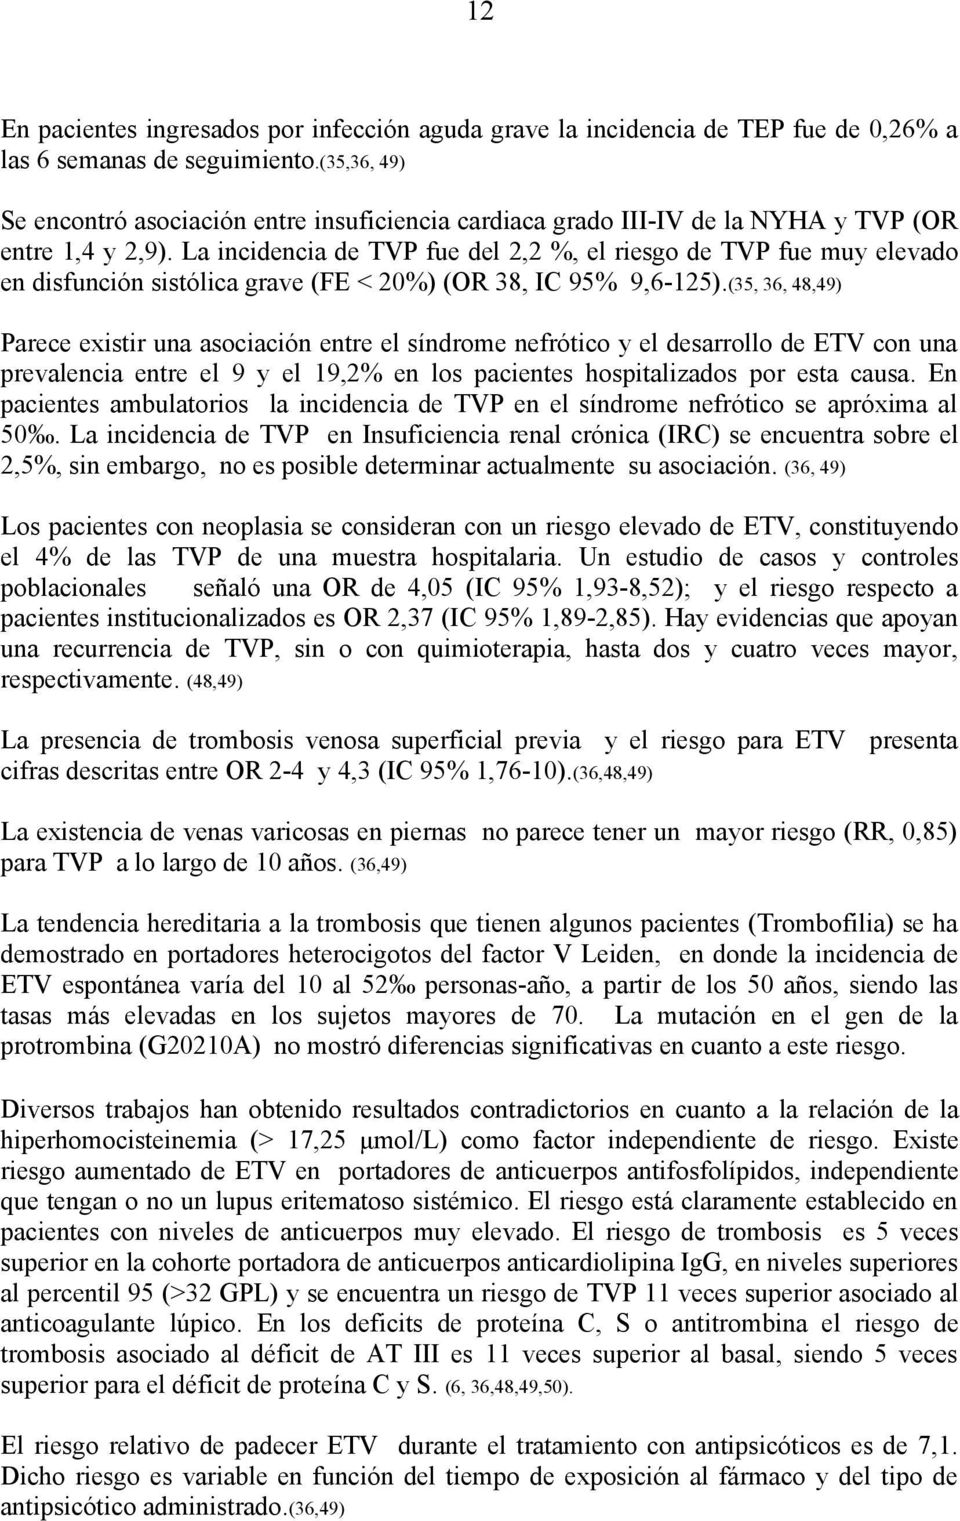 La incidencia de TVP fue del 2,2 %, el riesgo de TVP fue muy elevado en disfunción sistólica grave (FE < 20%) (OR 38, IC 95% 9,6-125).